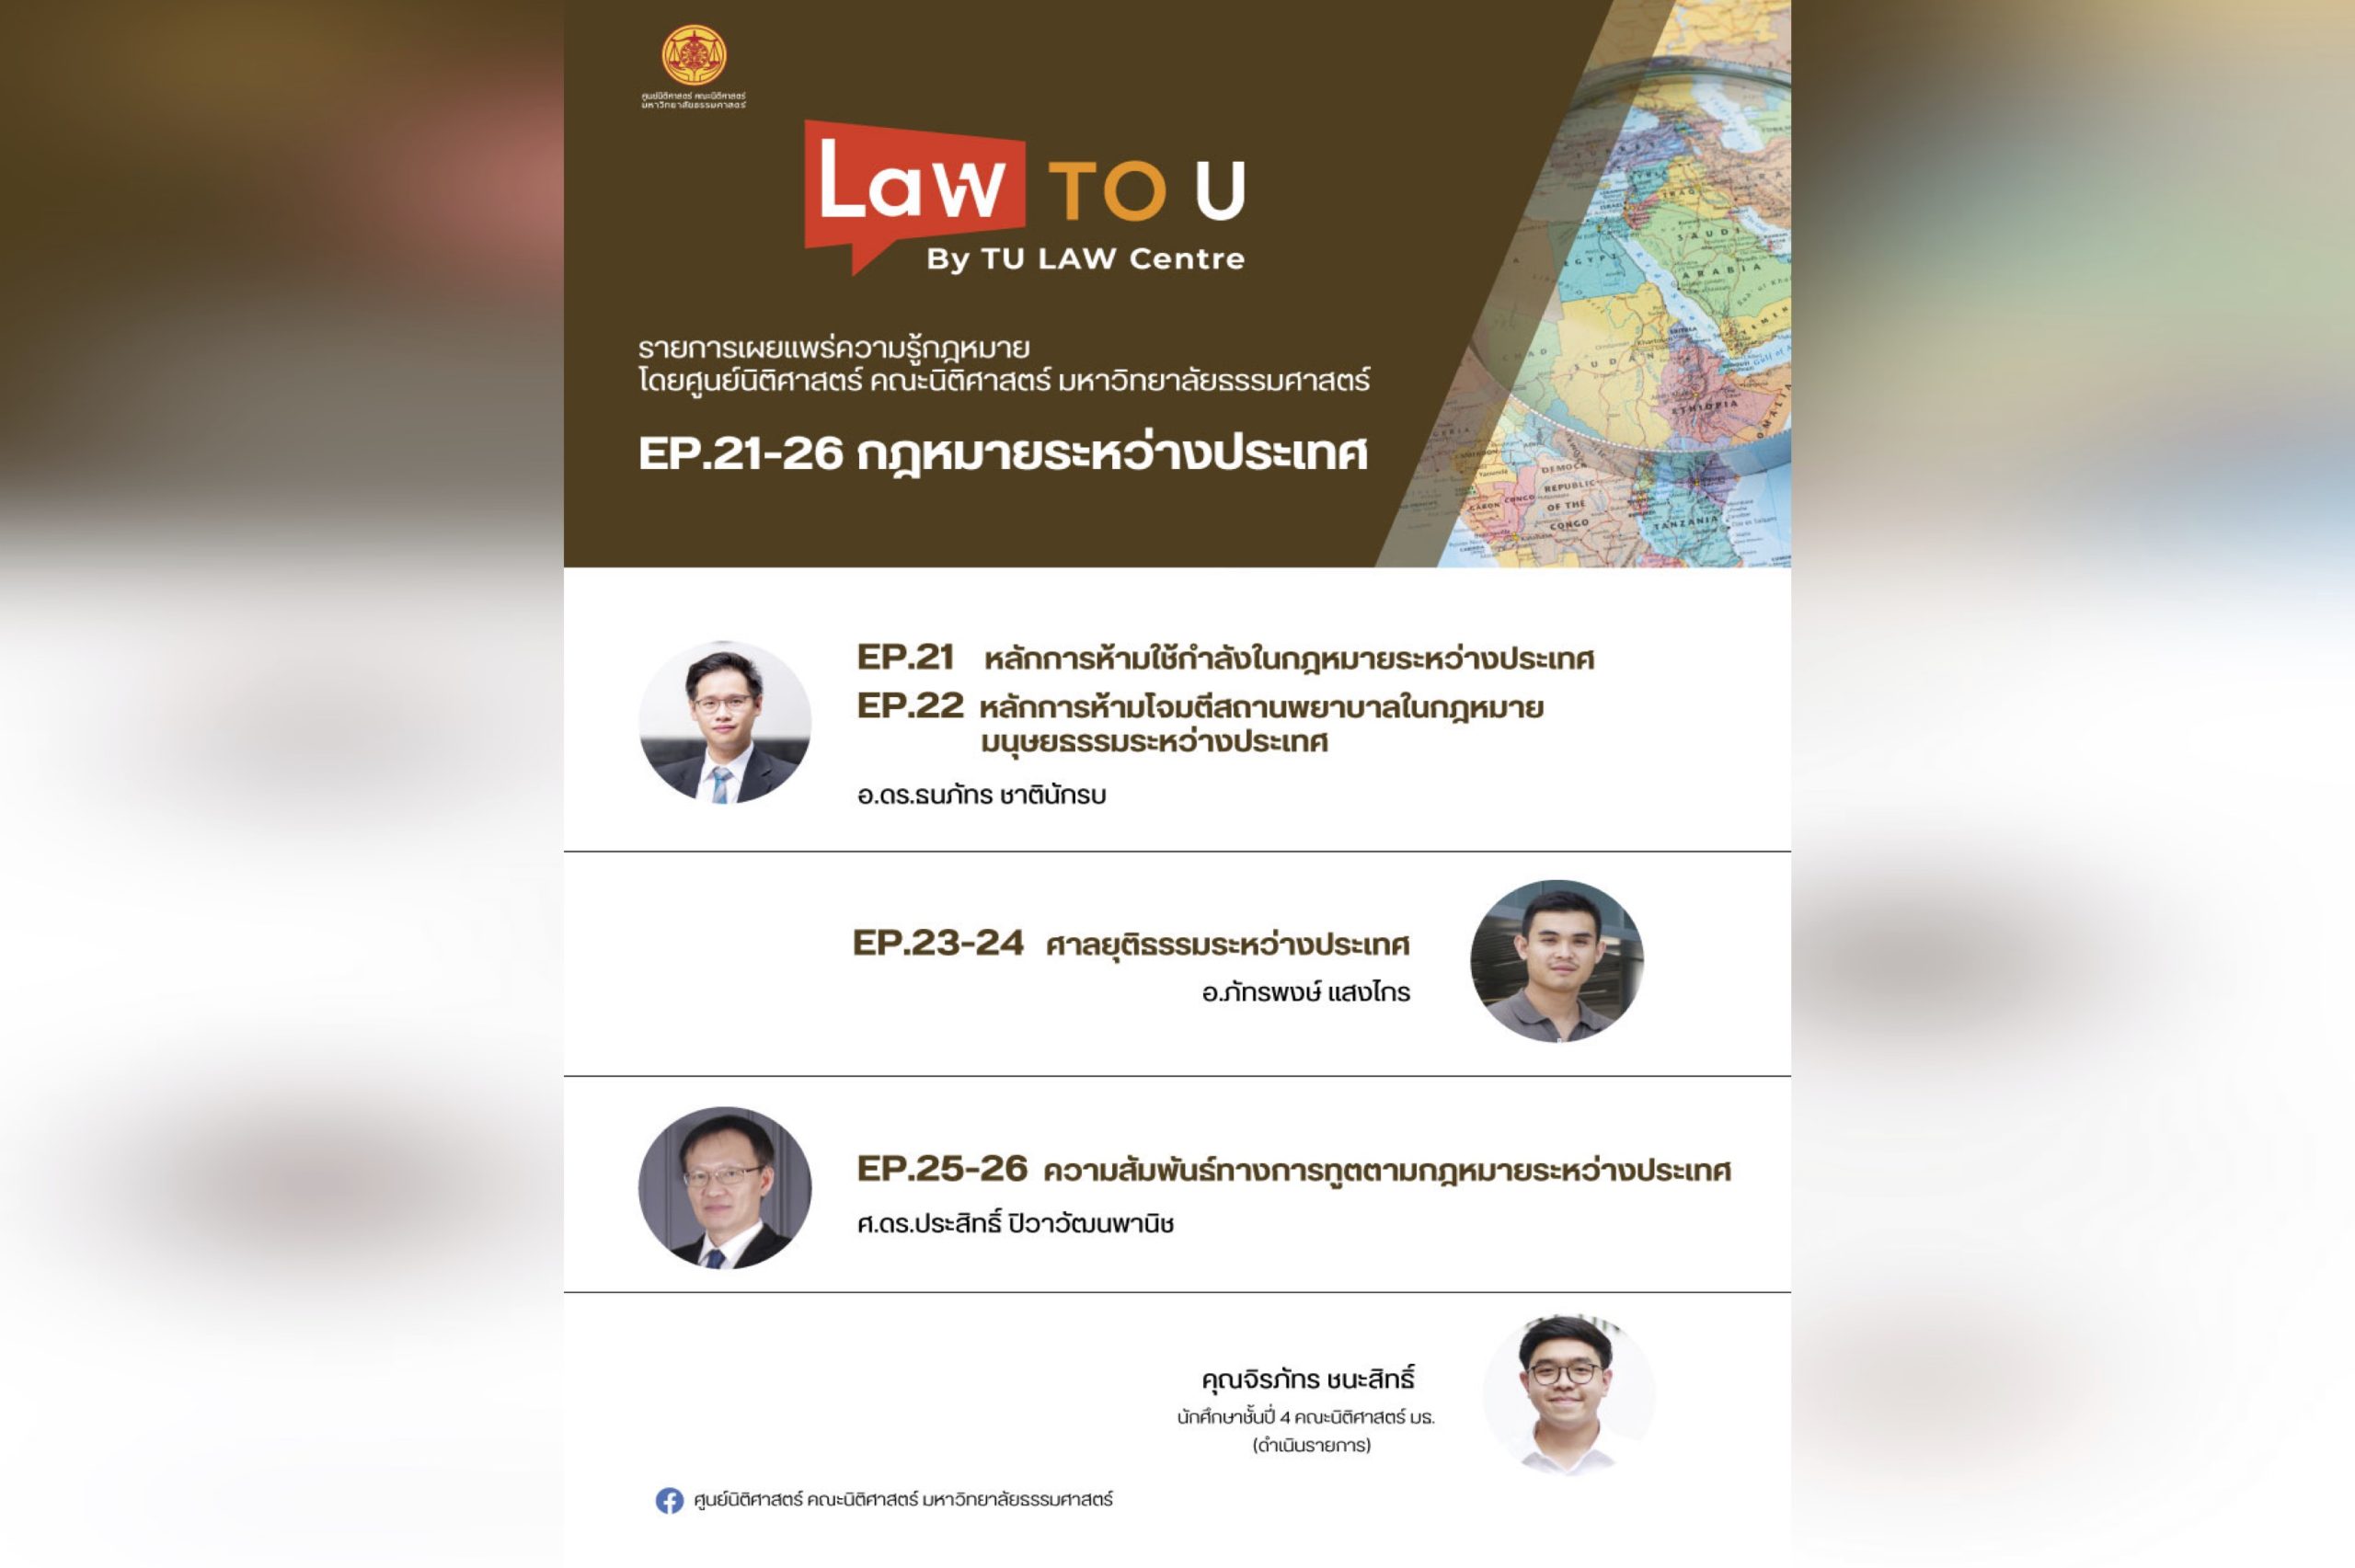 สรุปผลการดำเนินรายการ “Law To U By TU LAW Centre” รายการเผยแพร่ความรู้กฎหมายโดยศูนย์นิติศาสตร์ฯ ตอนที่ 4